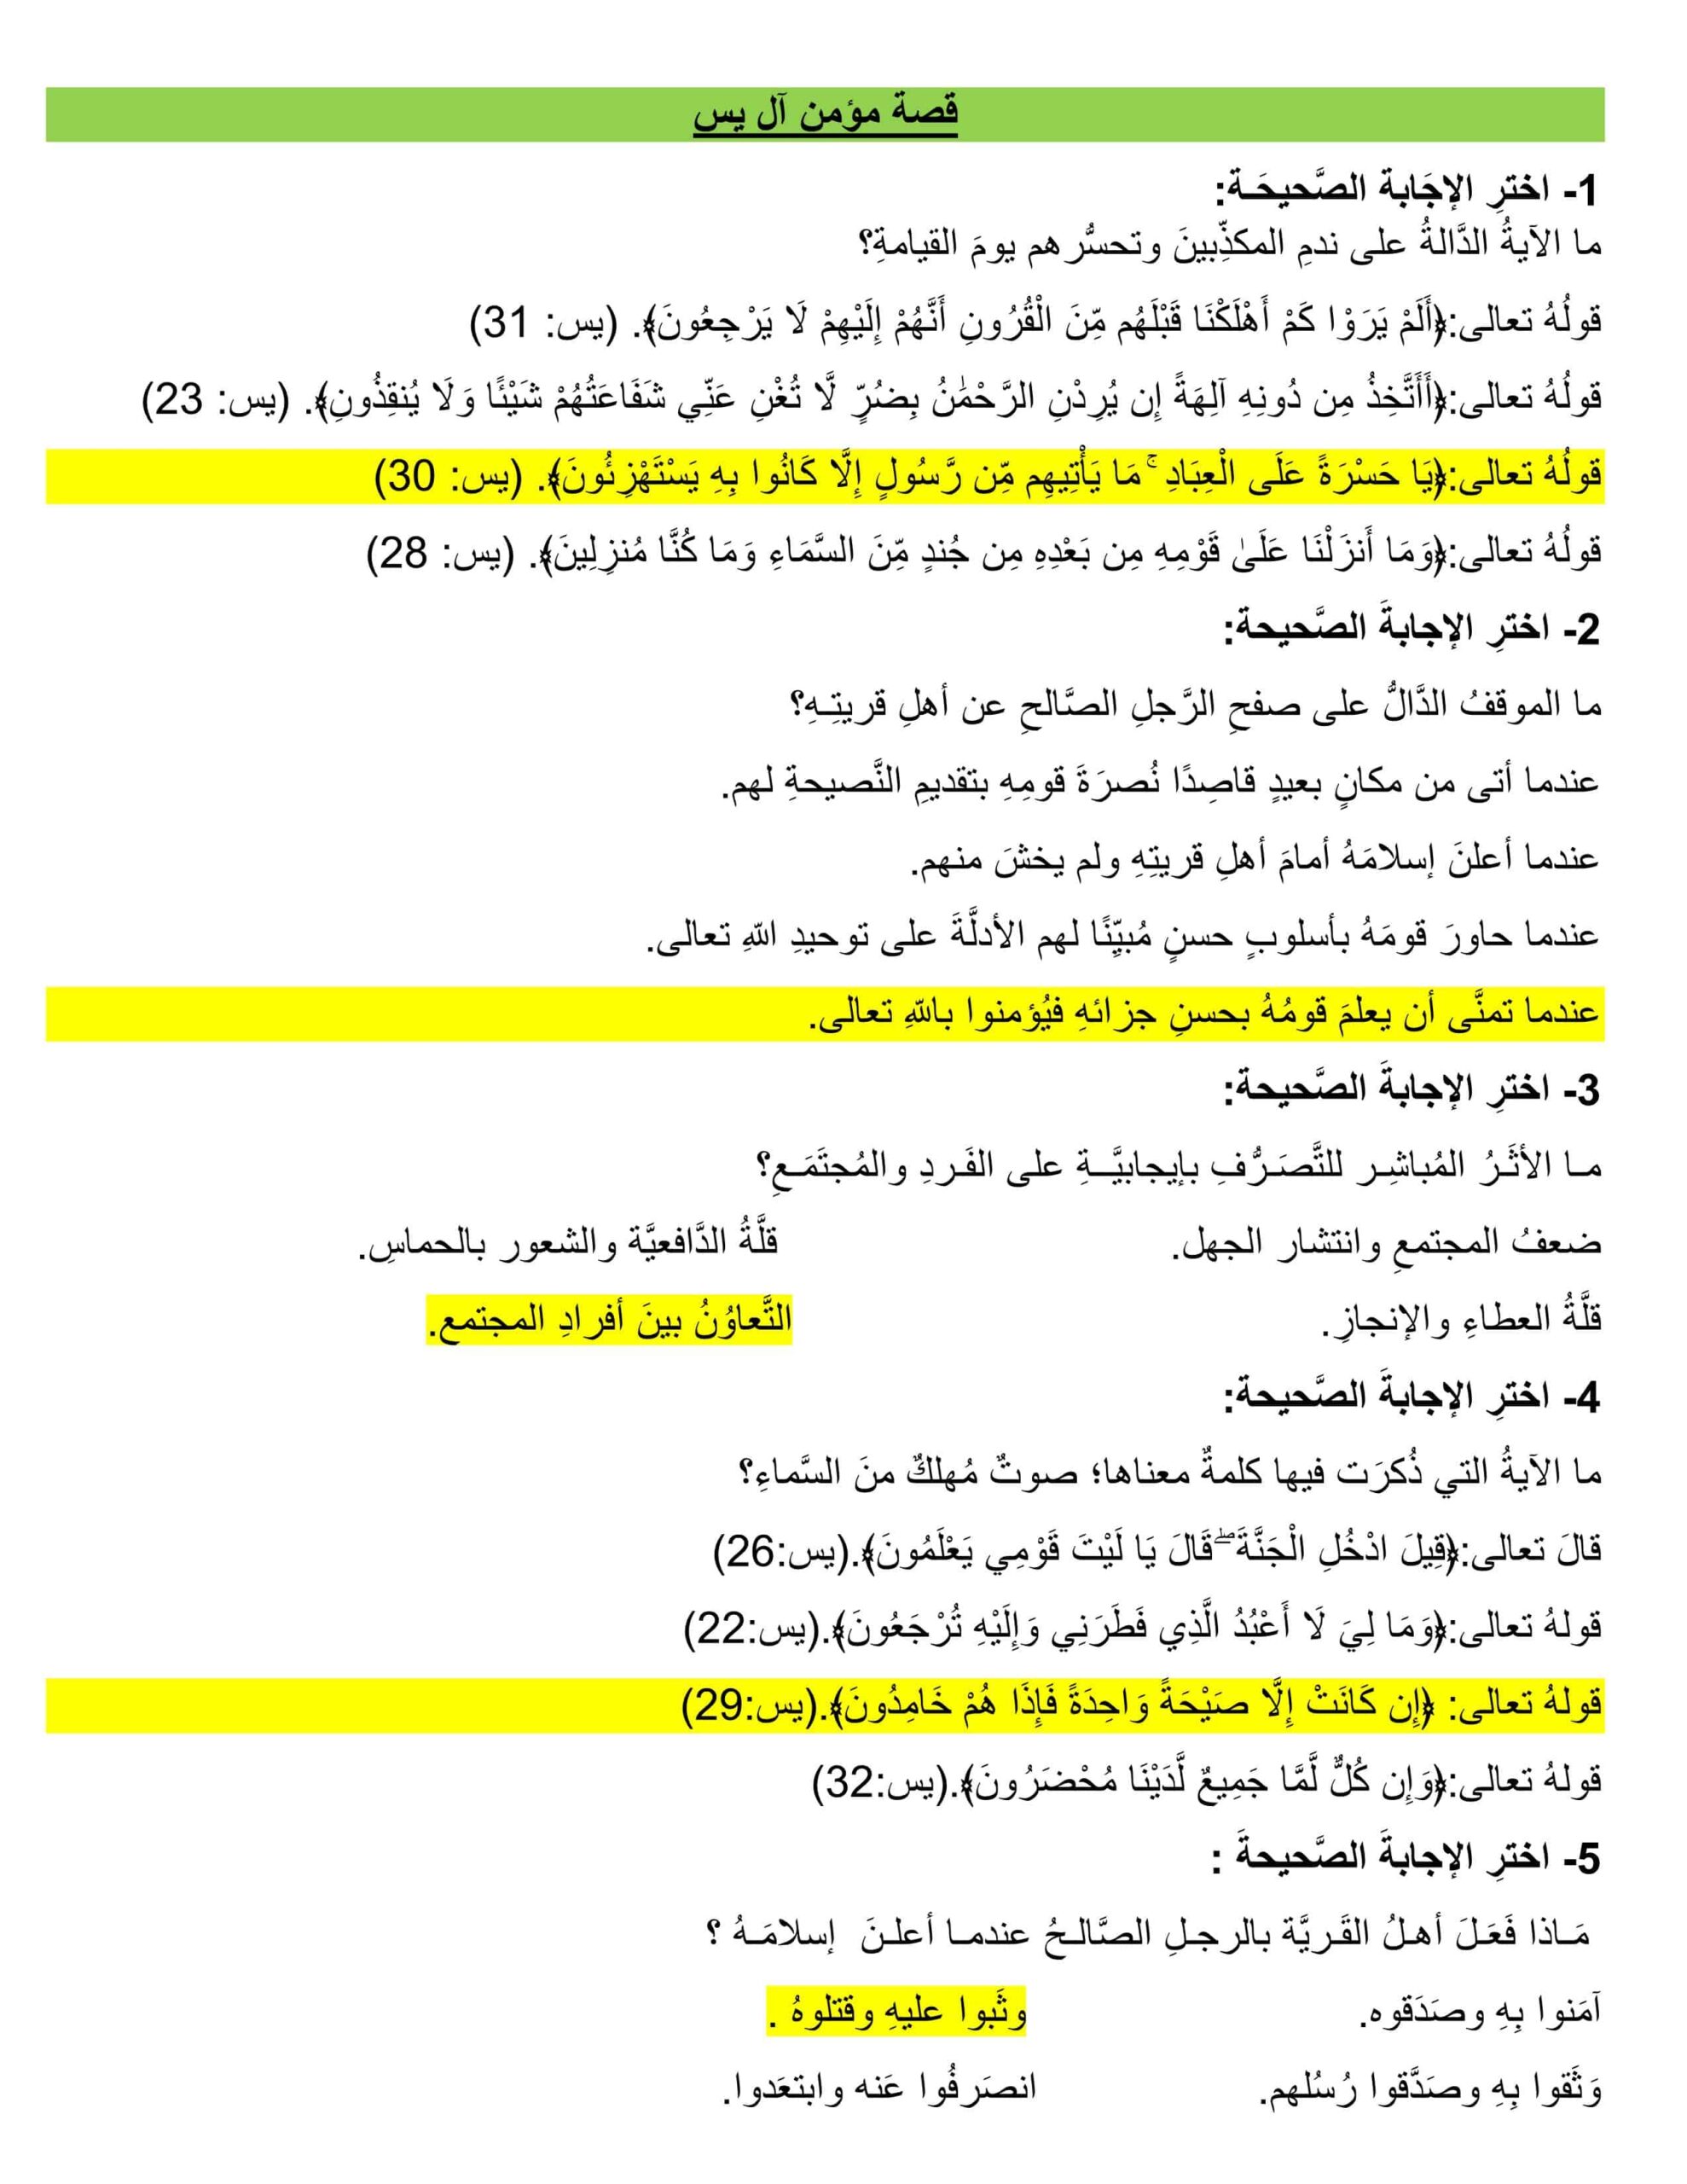 أوراق عمل مراجعة عامة التربية الإسلامية الصف الثامن 